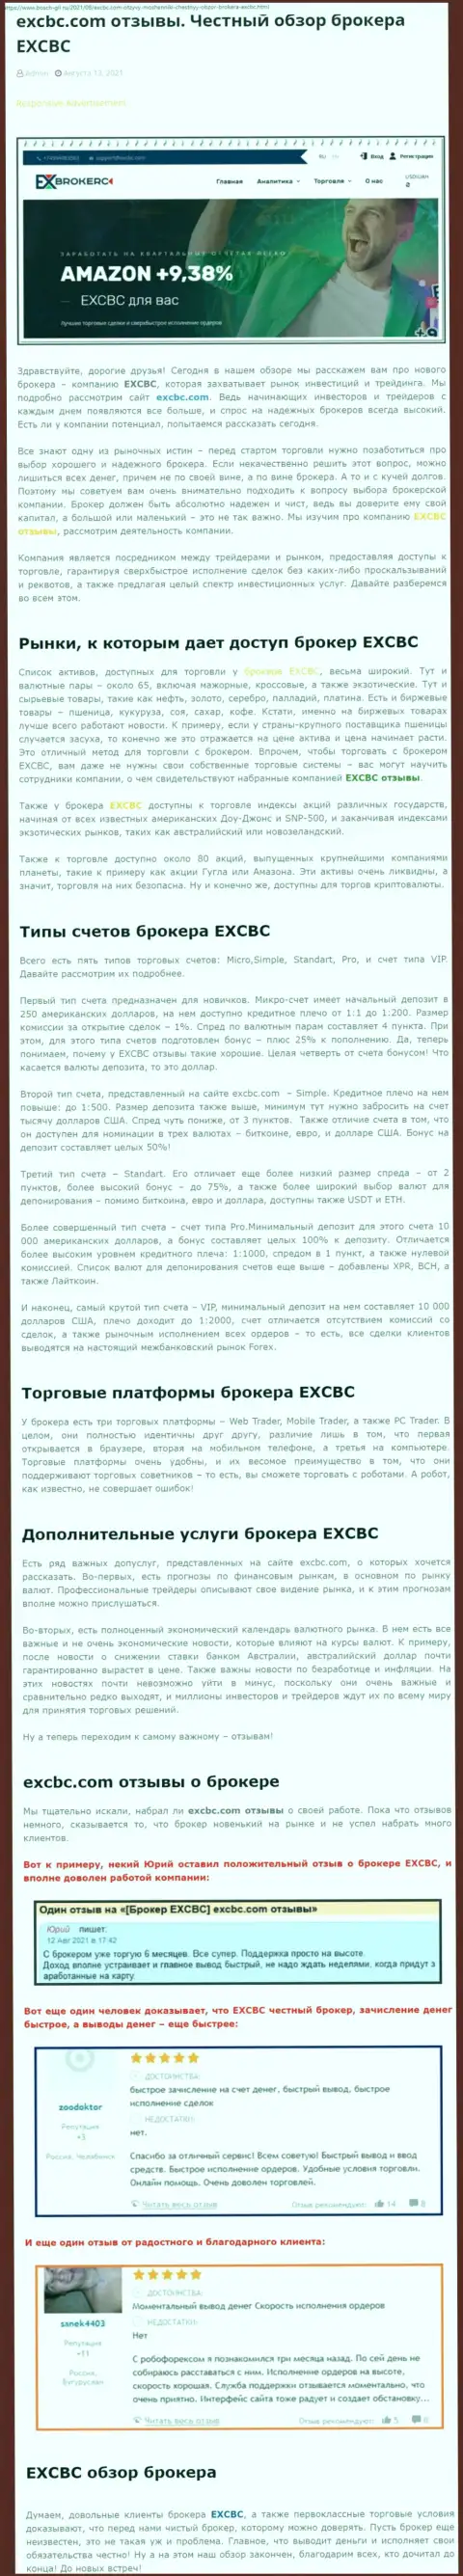 Правдивый анализ forex брокерской организации ЕХЧЕНЖБК Лтд Инк на сайте bosch gll ru